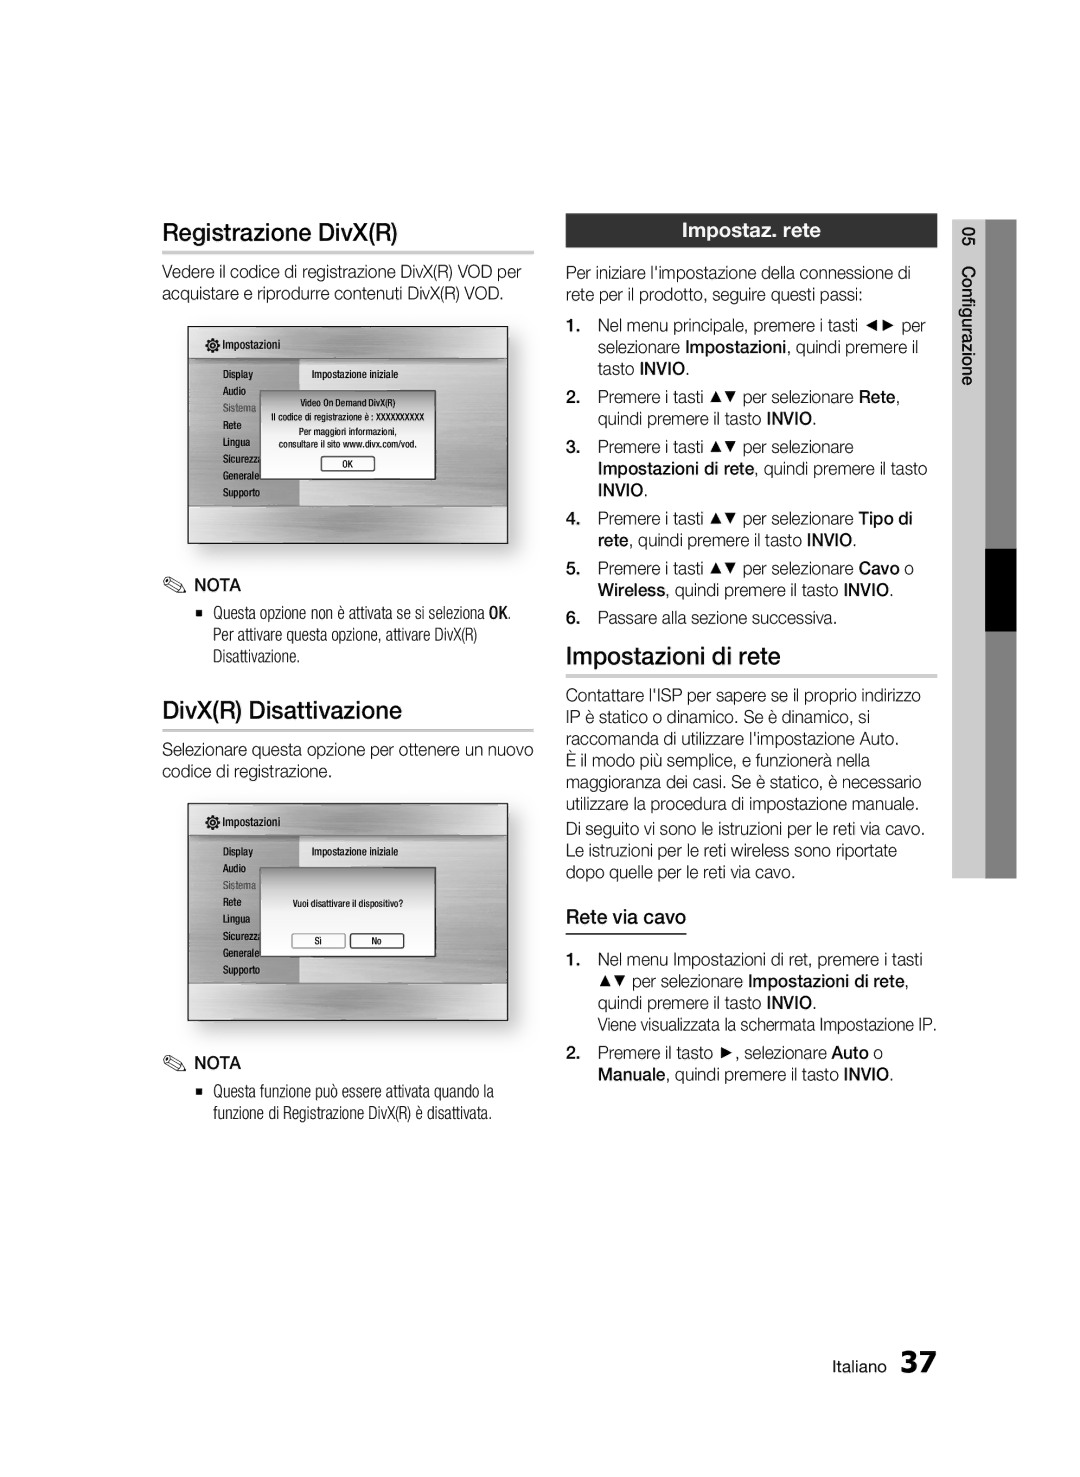 Samsung BD-C7500/XEF manual Registrazione DivXR, DivXR Disattivazione, Impostazioni di rete, Impostaz. rete, Rete via cavo 